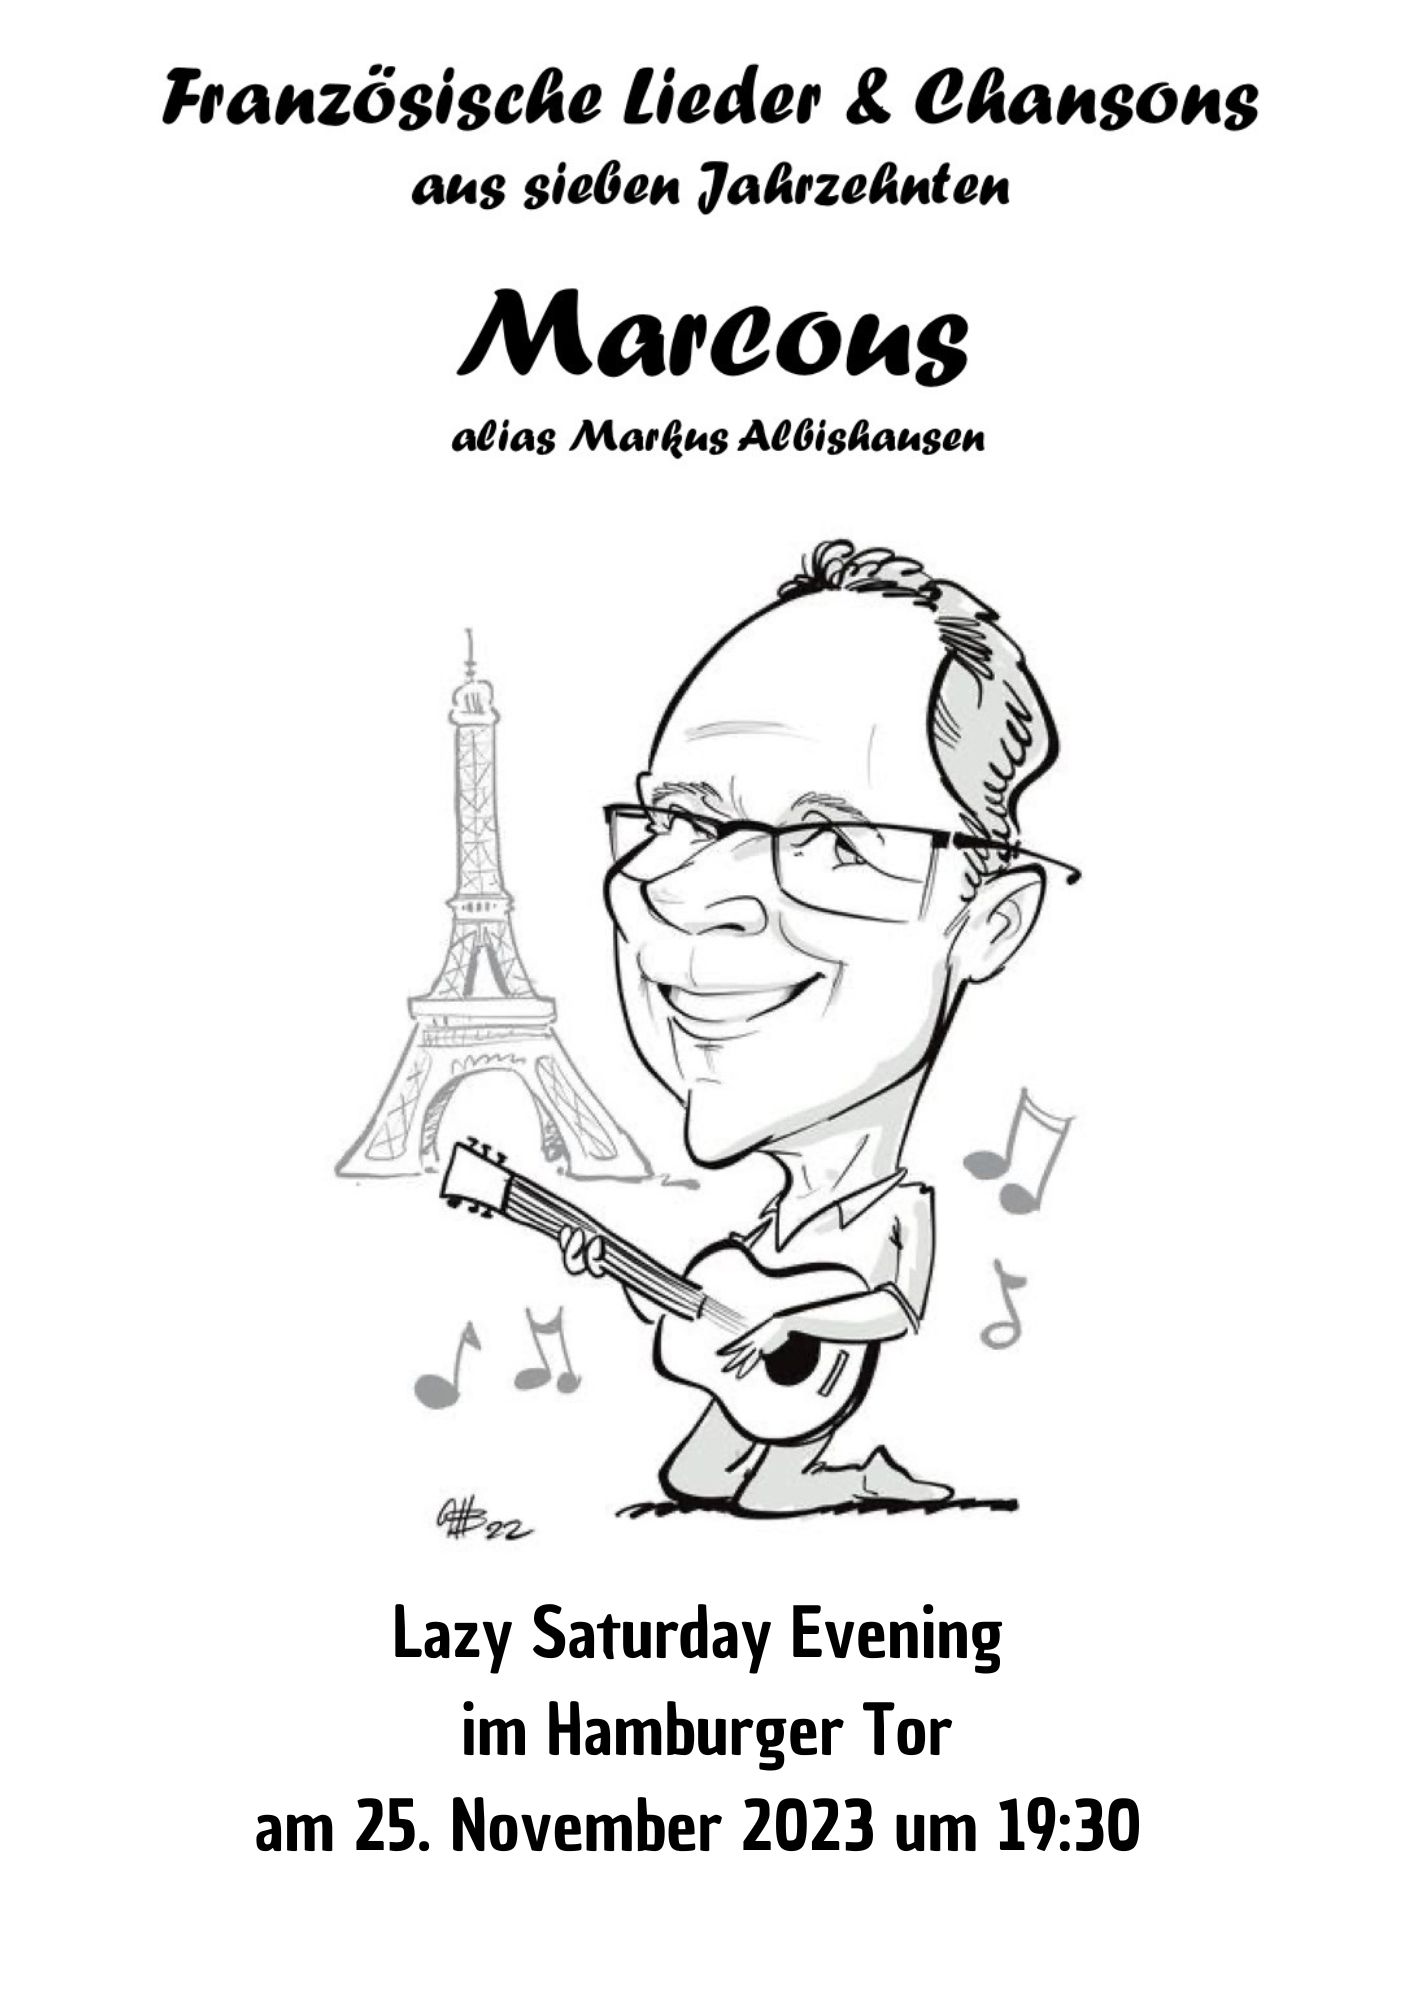 Lazy Saturday Evening mit französischen Chansons